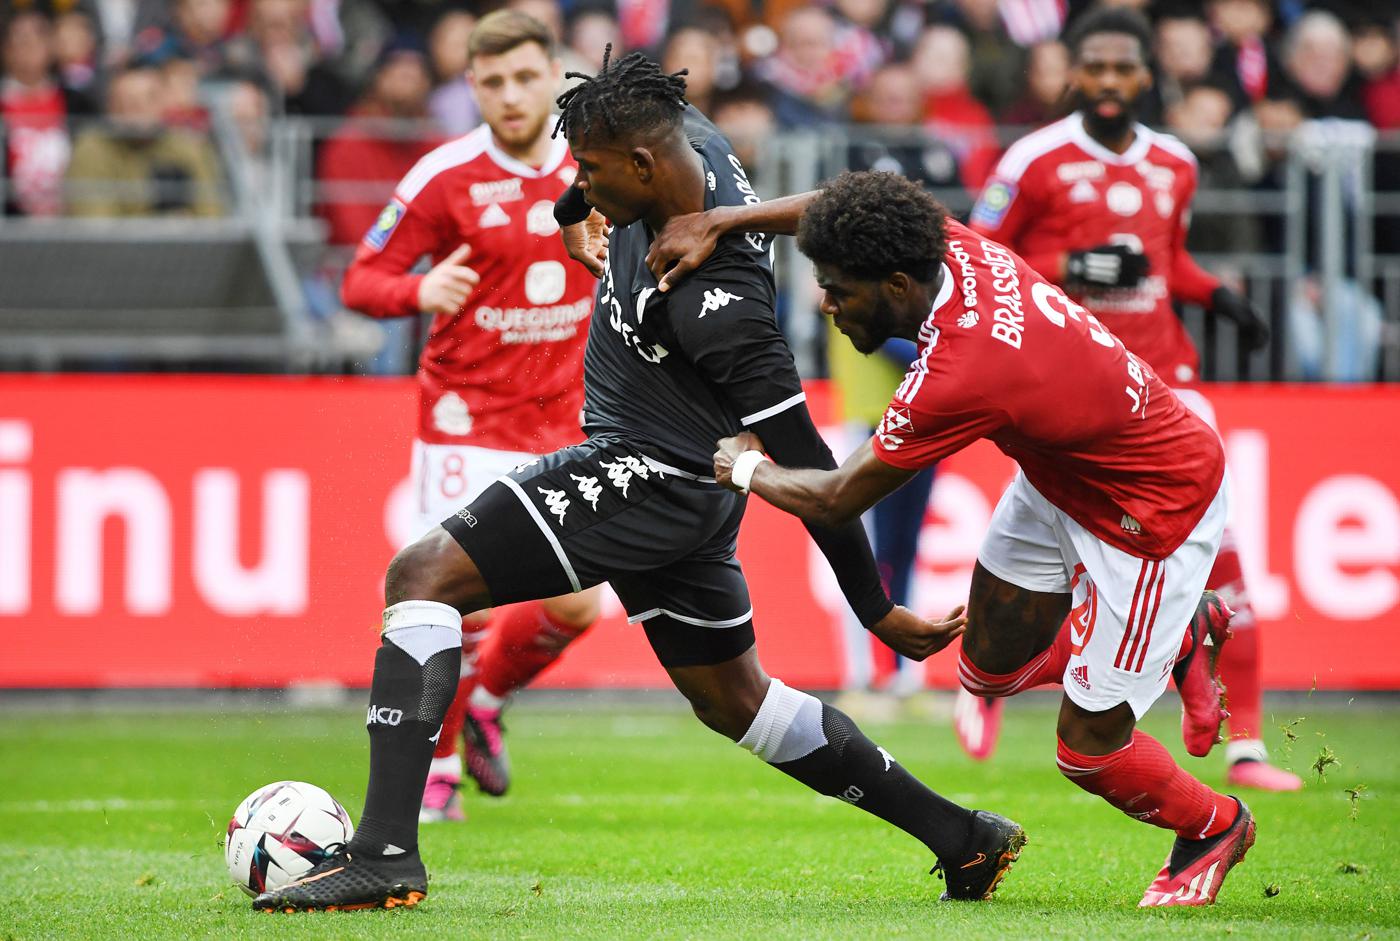 Brest - Monaco - 1:2. Französische Meisterschaft, 24. Runde. Spielbericht, Statistiken